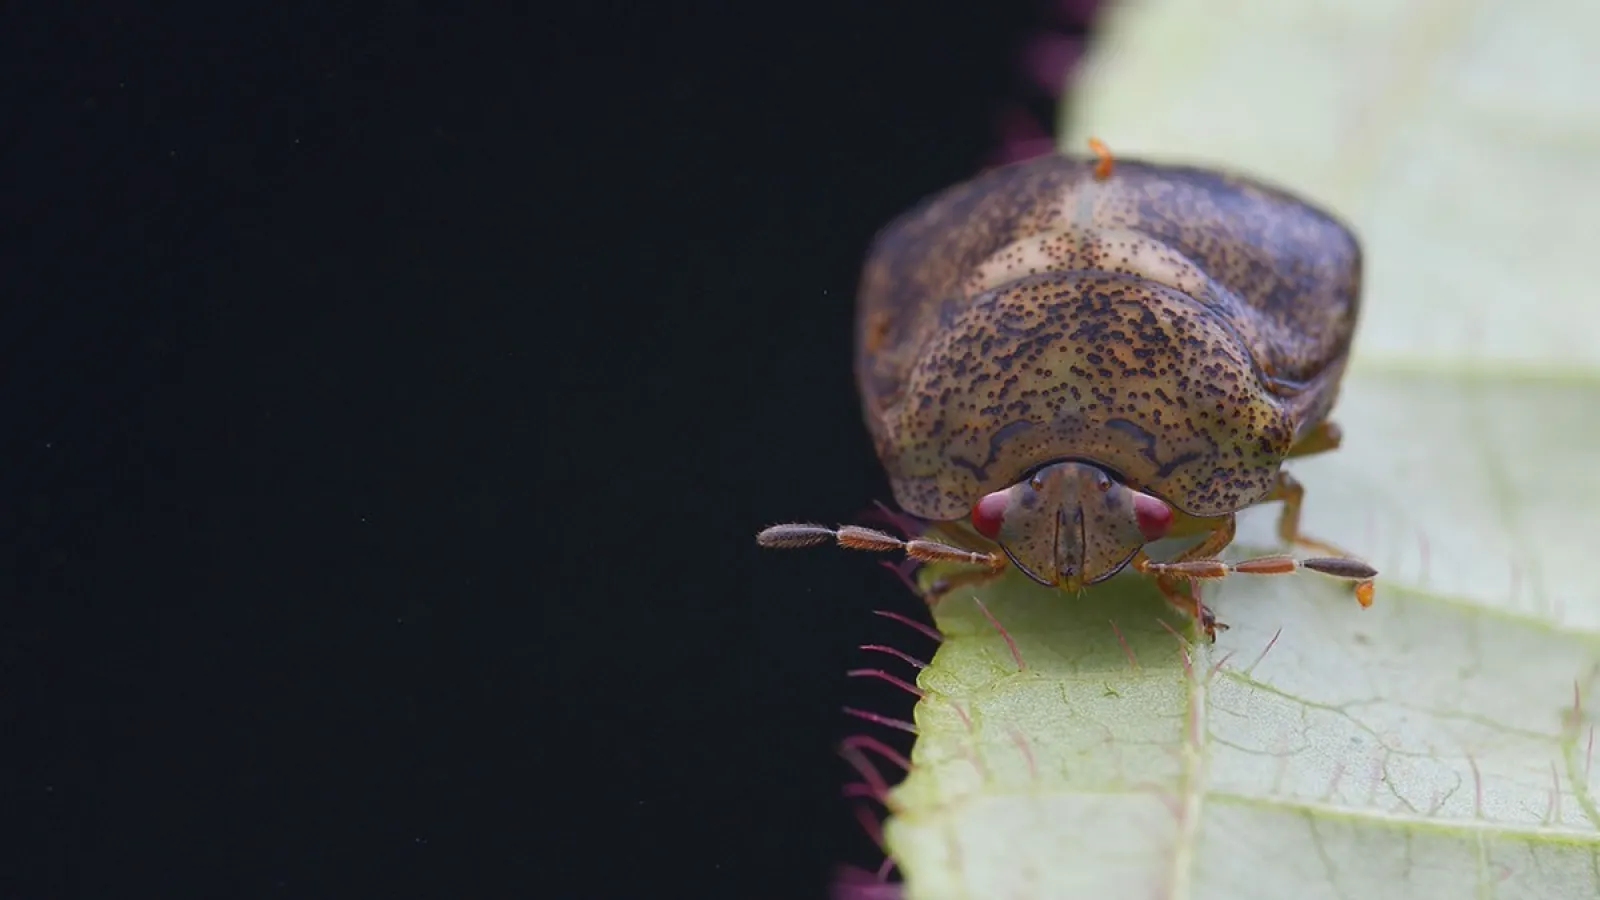 a bug on a leaf